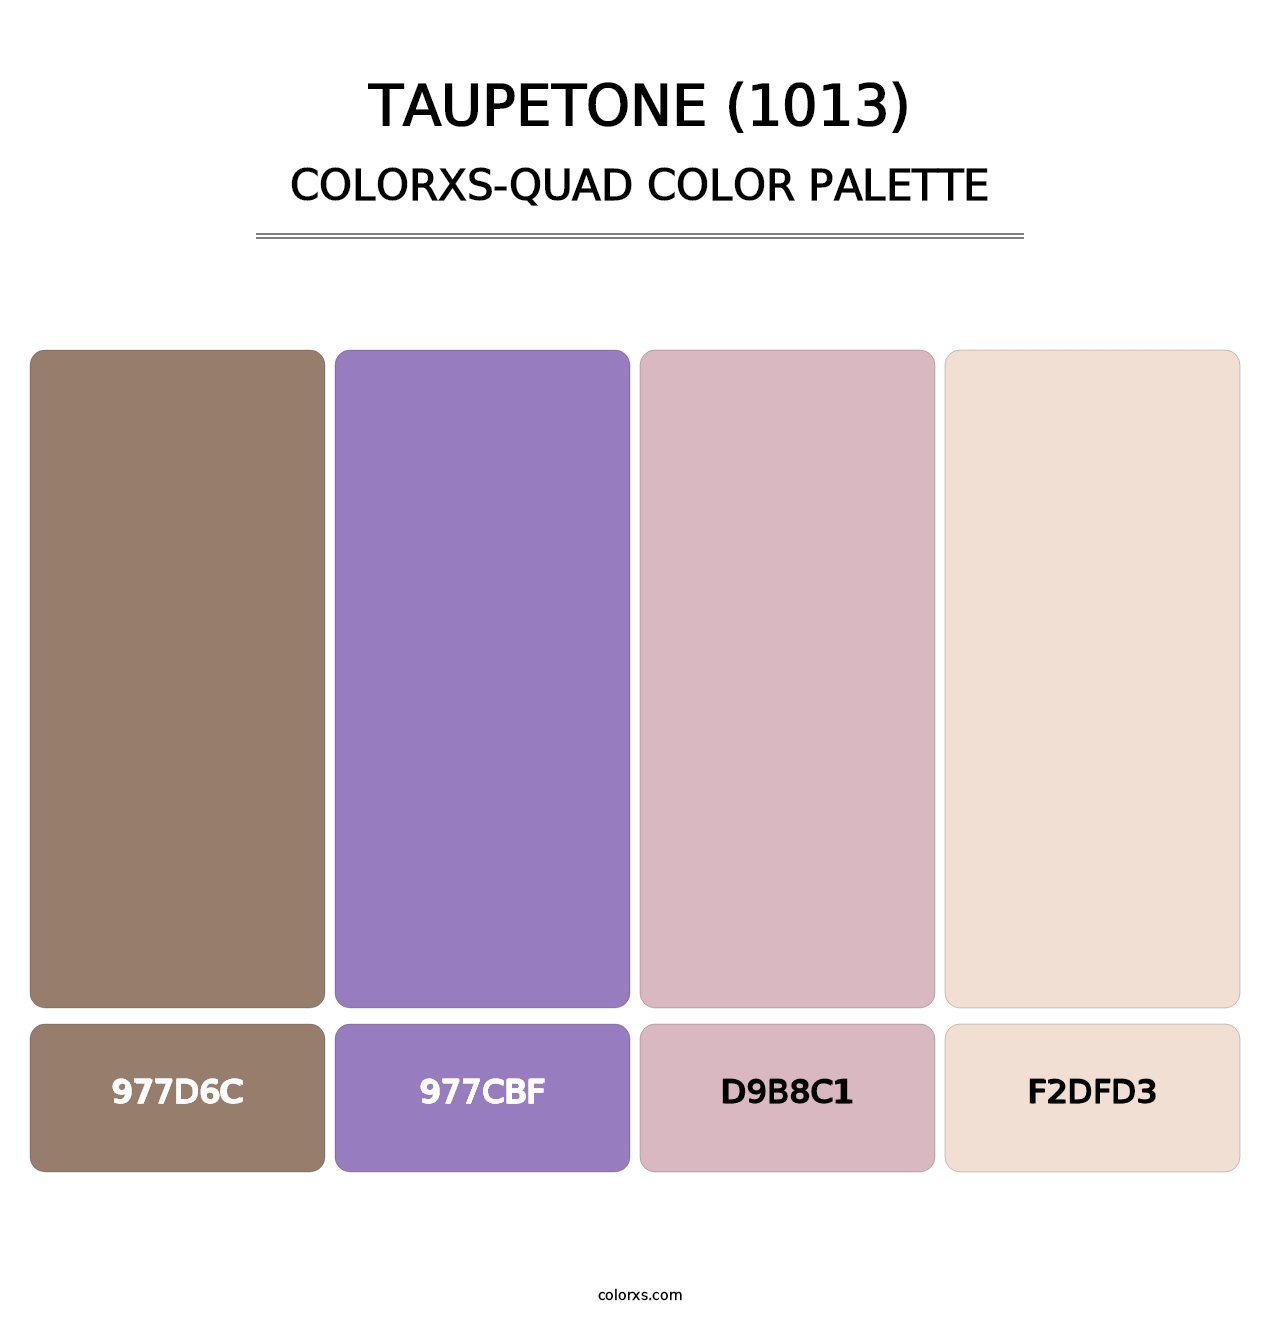 Taupetone (1013) - Colorxs Quad Palette